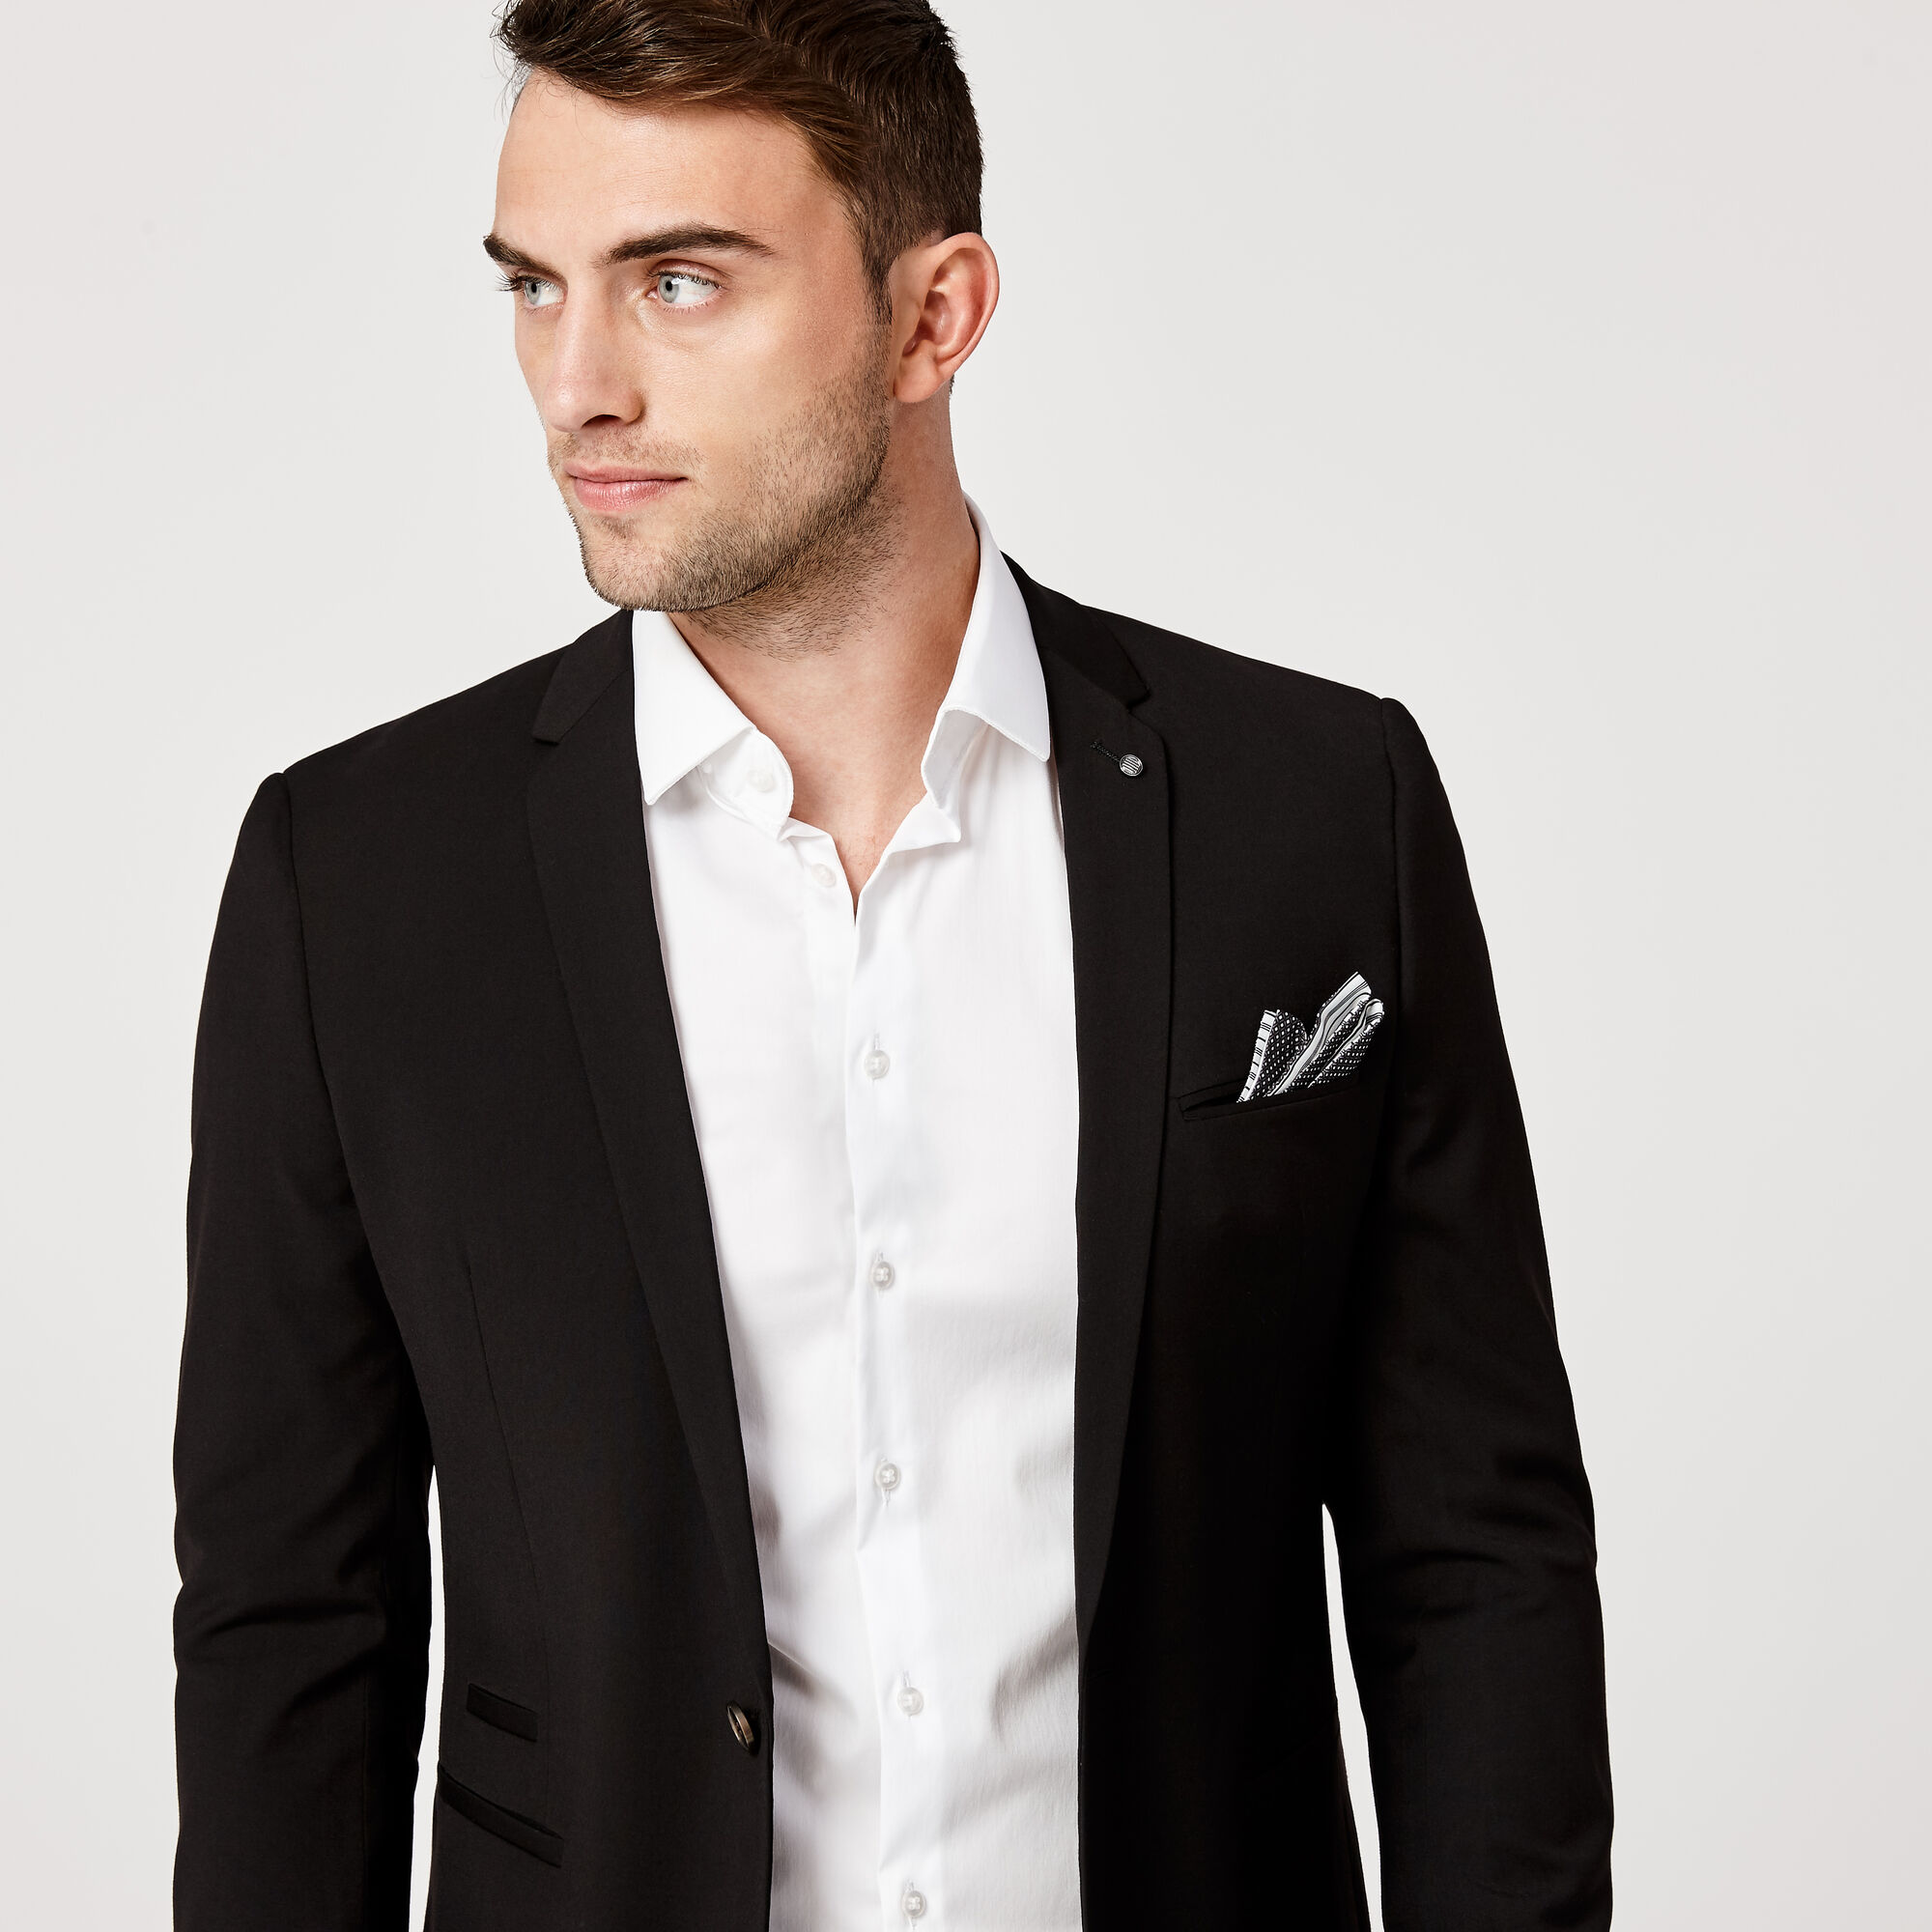 Mens Black Suit Jackets Outlets Online, Save 41% | jlcatj.gob.mx